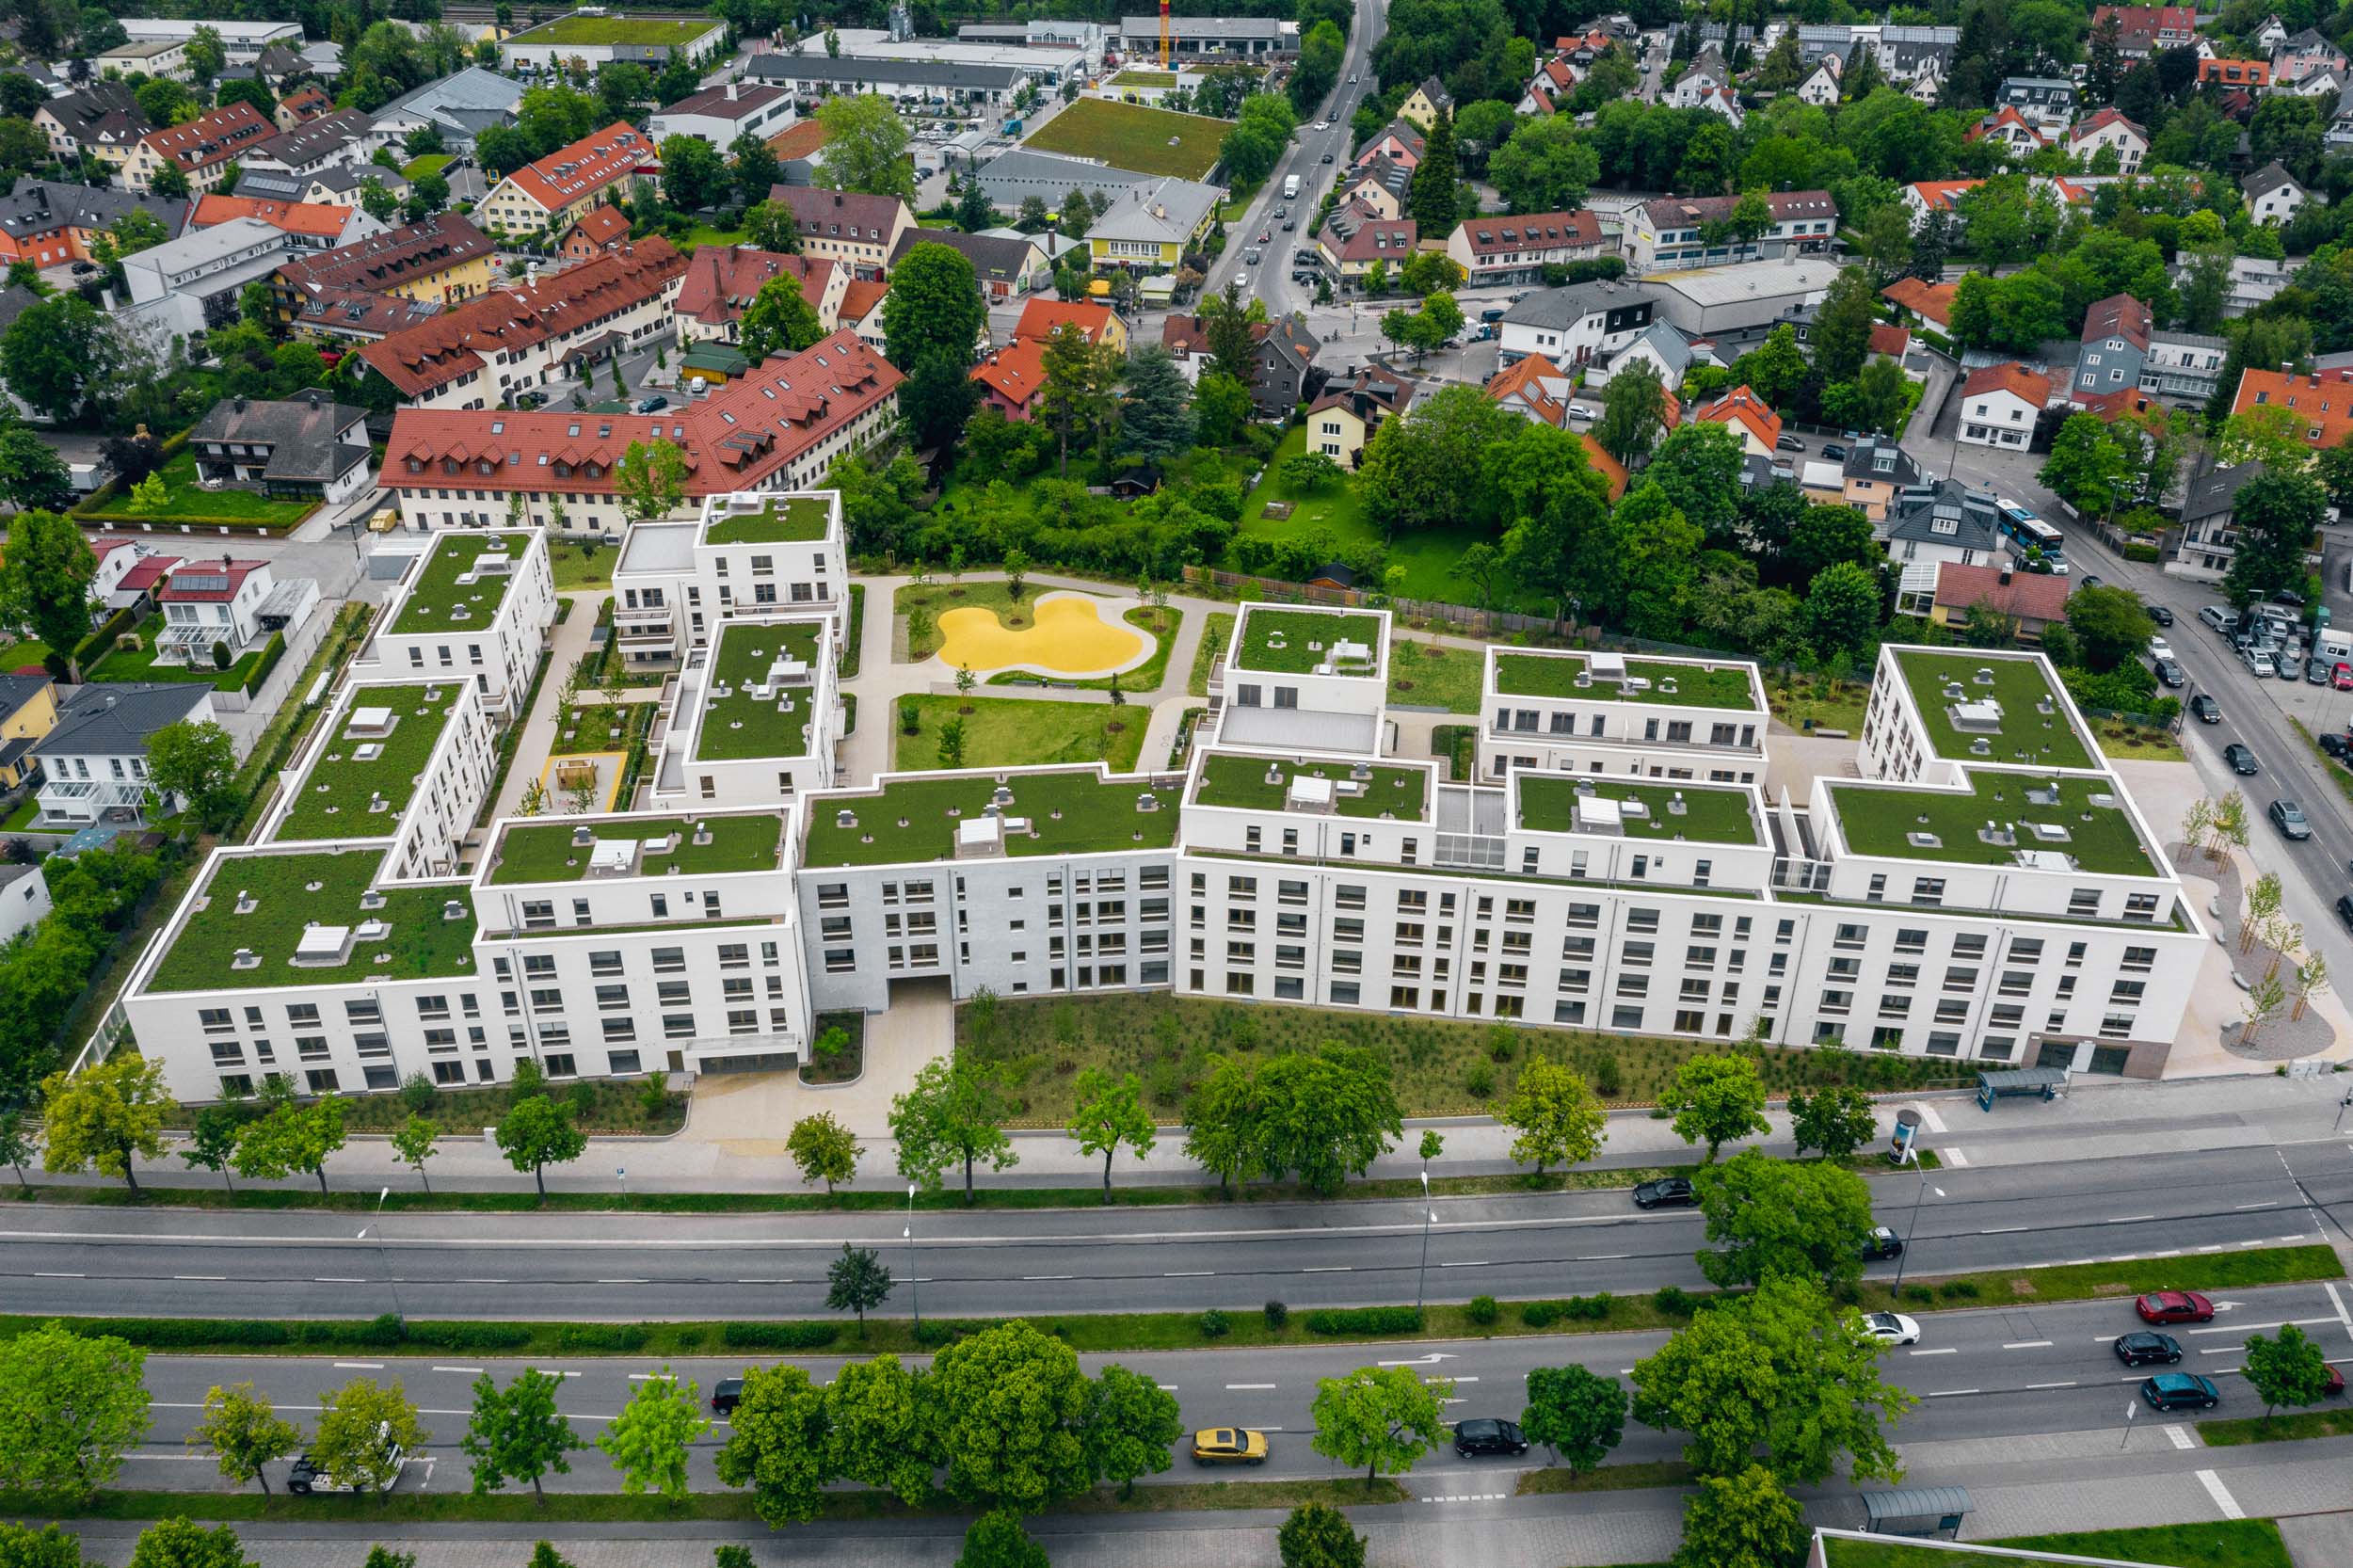 Gustav-Epple-Bauunternehmung-Tru-Living-München-Wohnbau-2020-TruLiving_DJI_0729#00